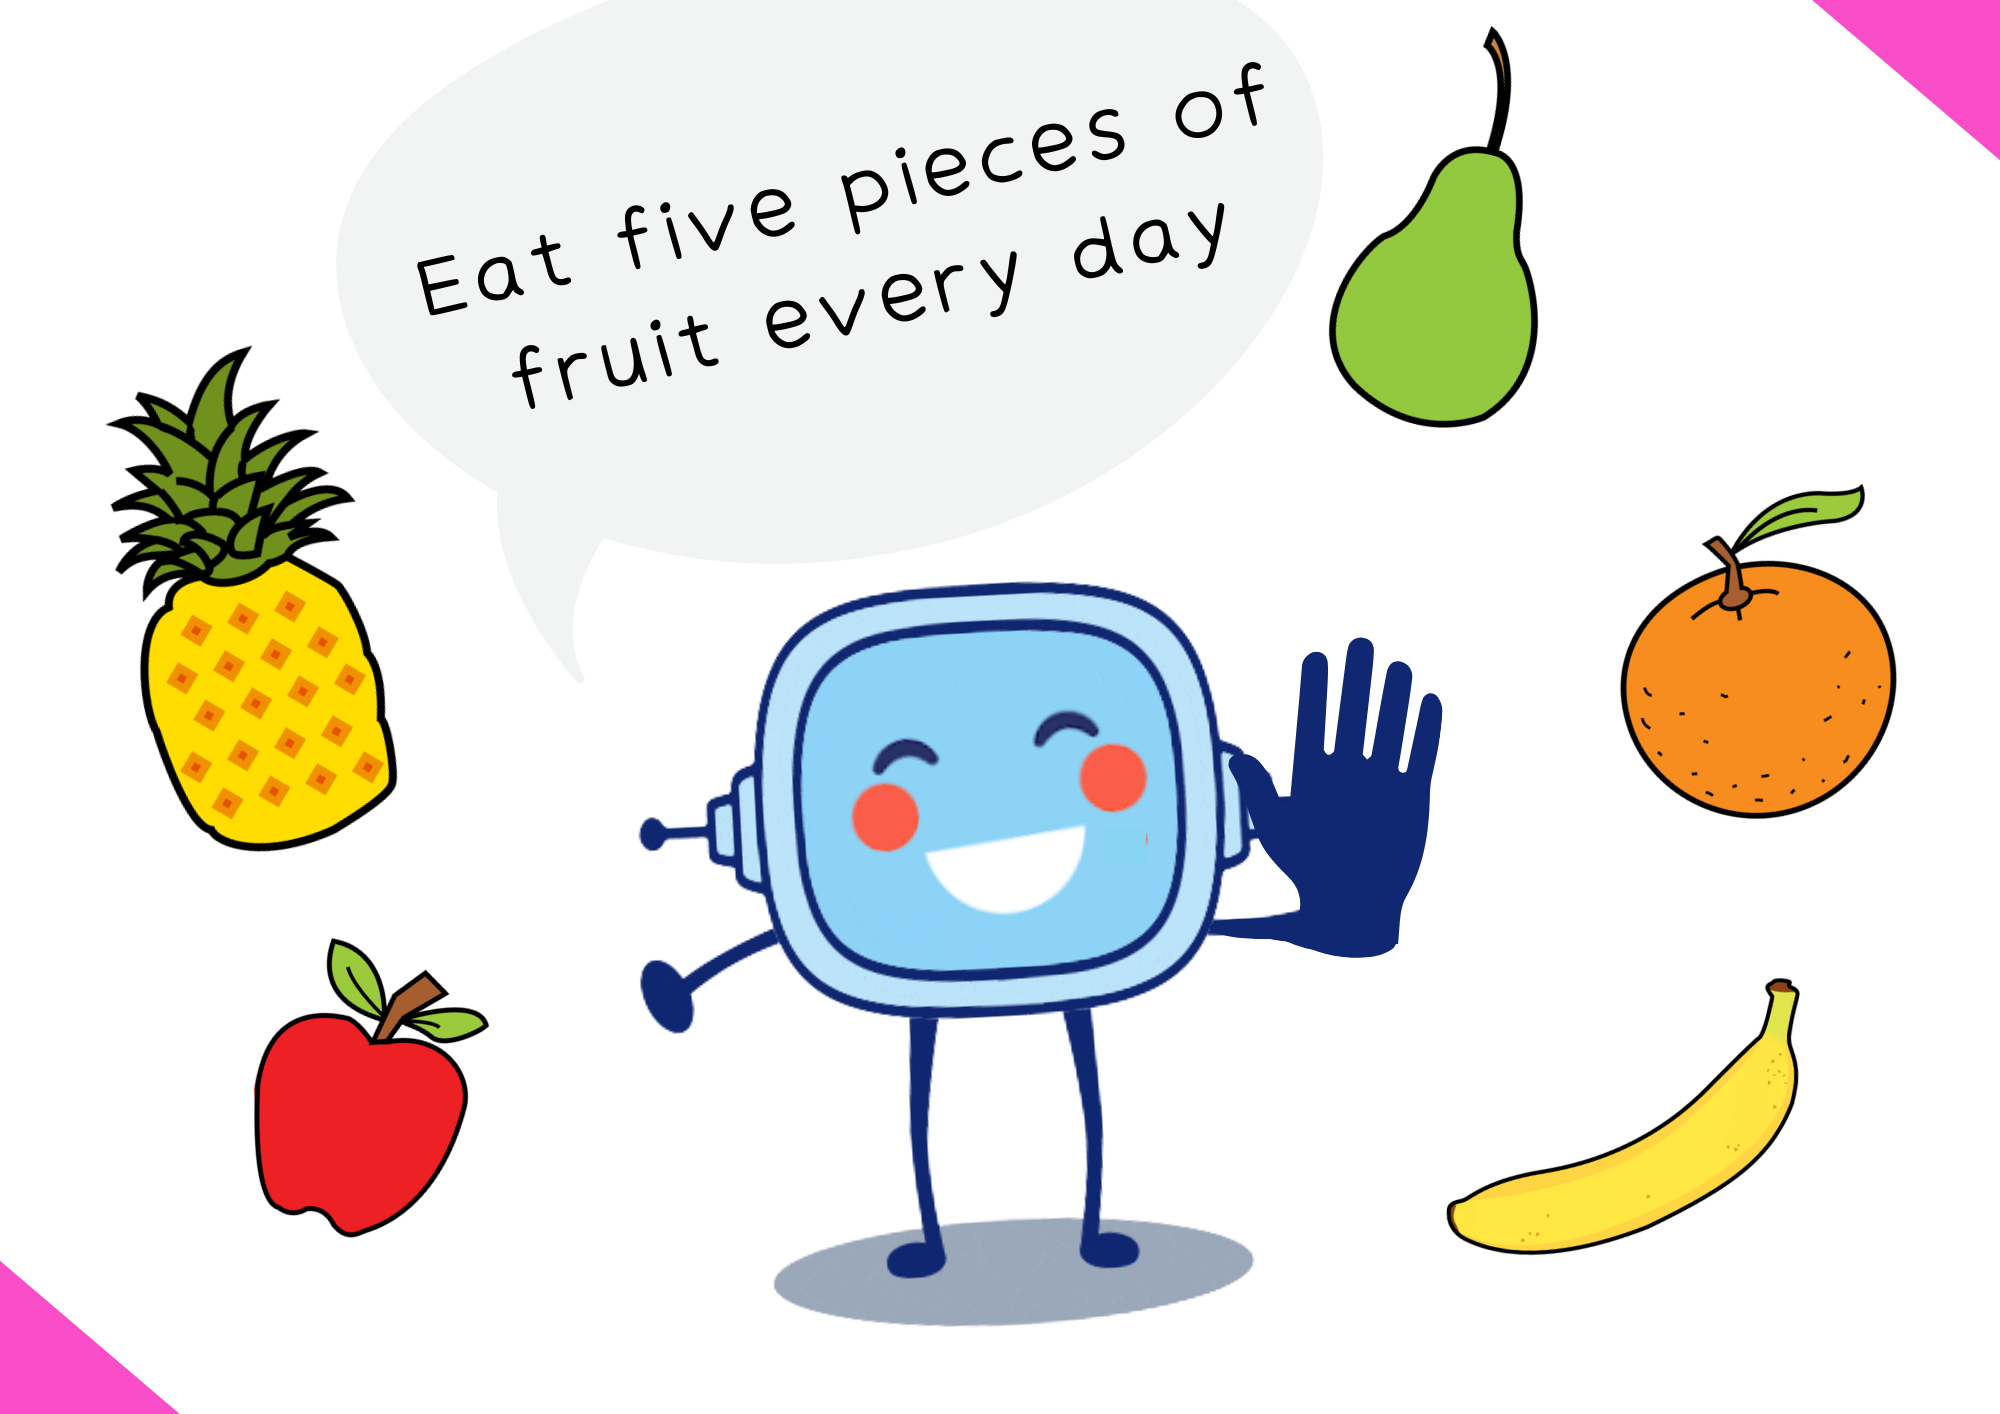 En la imagen se ve a Retor aconsejando comer cinco piezas de fruta al día.